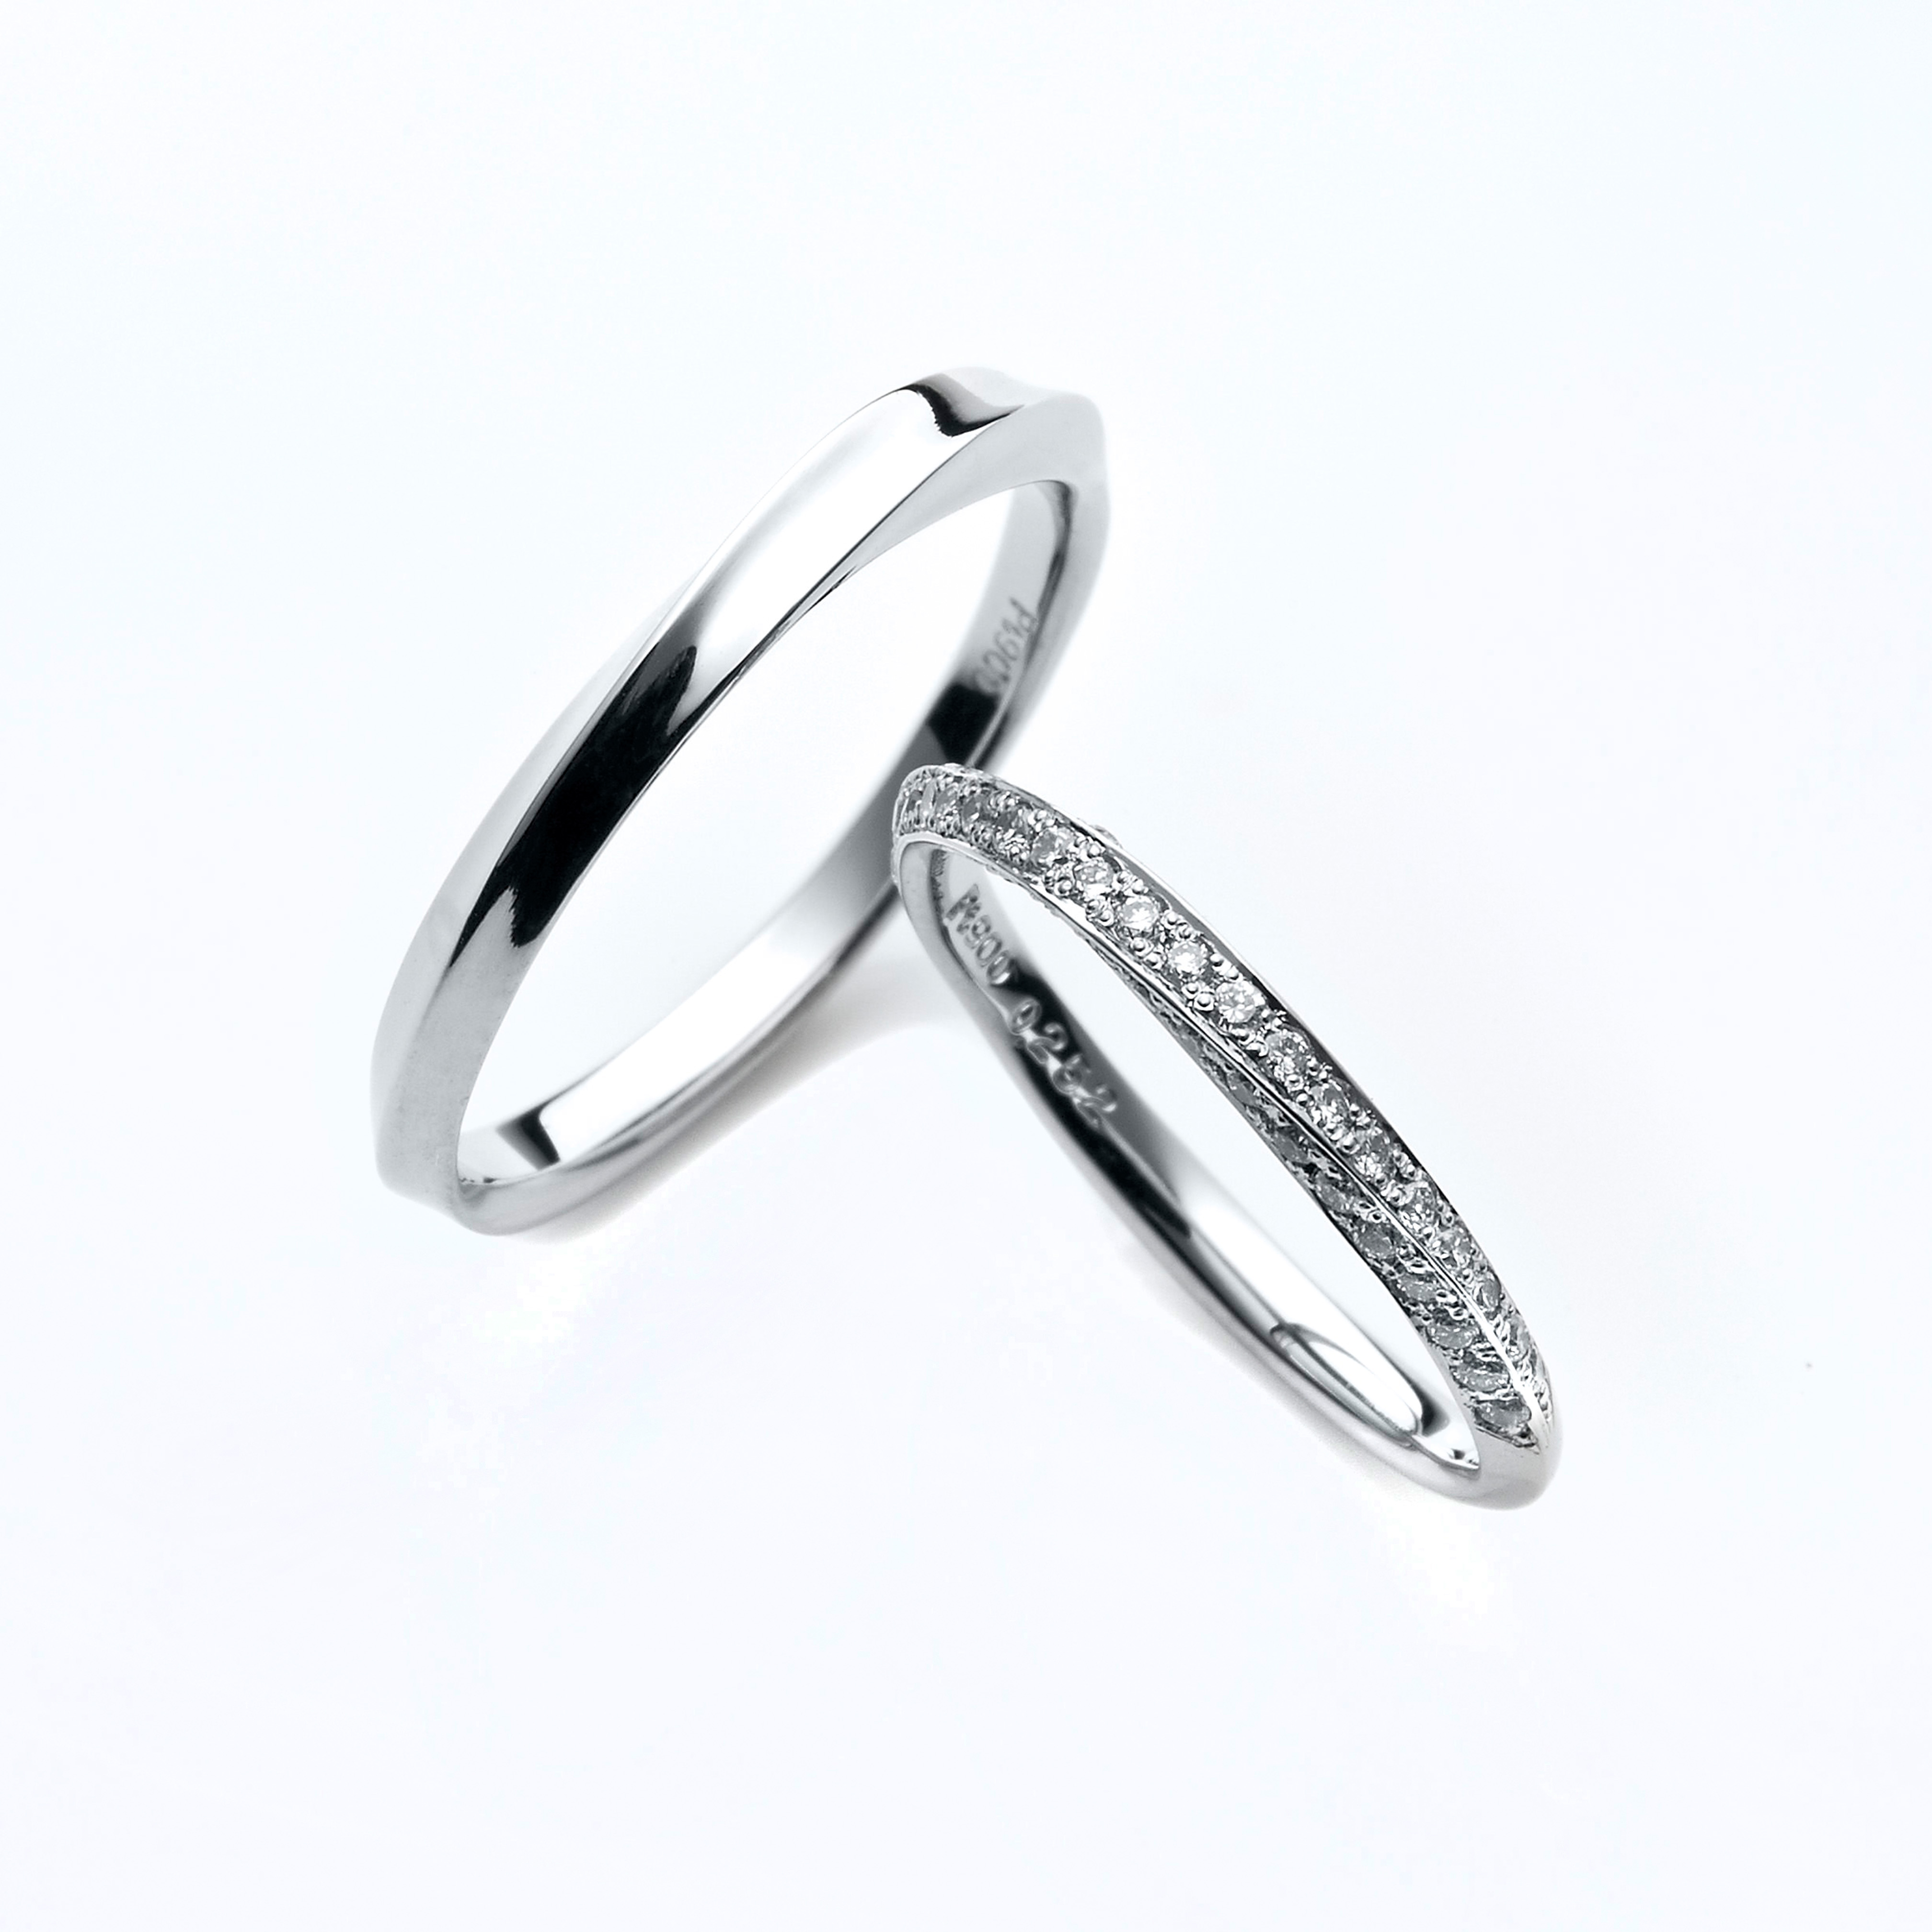 どの角度から見ても華やかで、敷き詰められたダイヤモンドが美しい結婚指輪です。